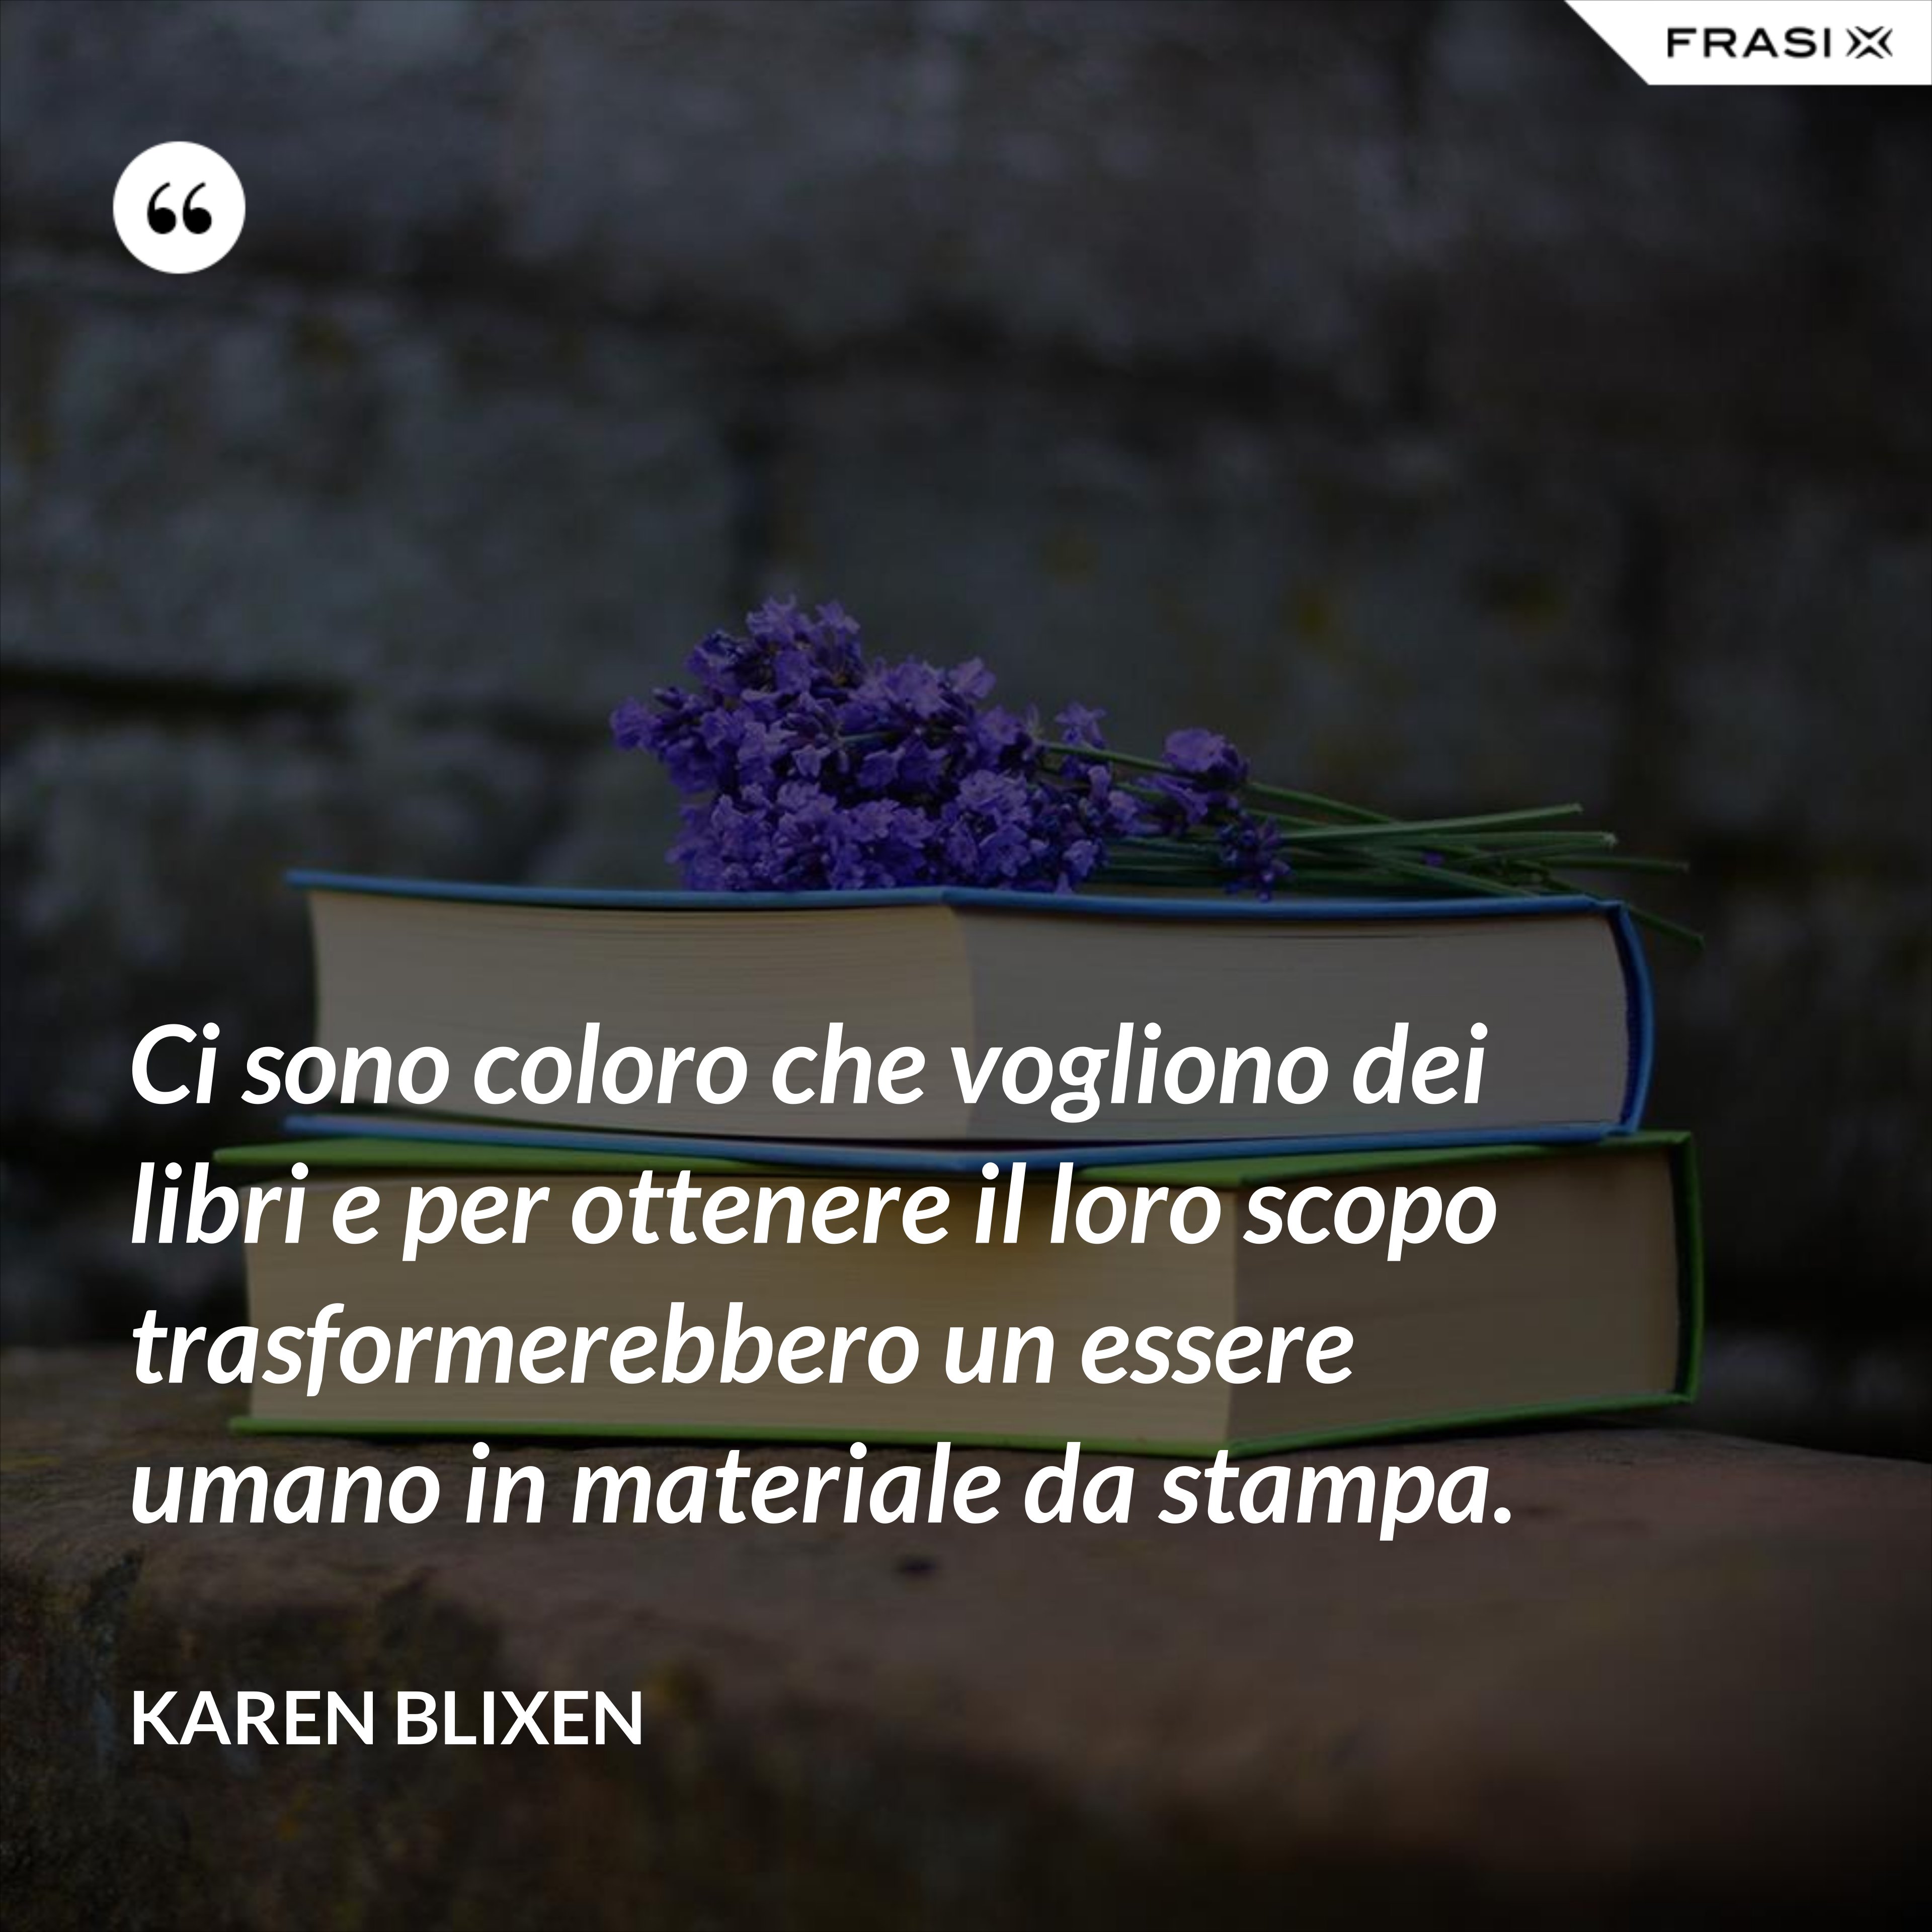 Ci sono coloro che vogliono dei libri e per ottenere il loro scopo trasformerebbero un essere umano in materiale da stampa. - Karen Blixen